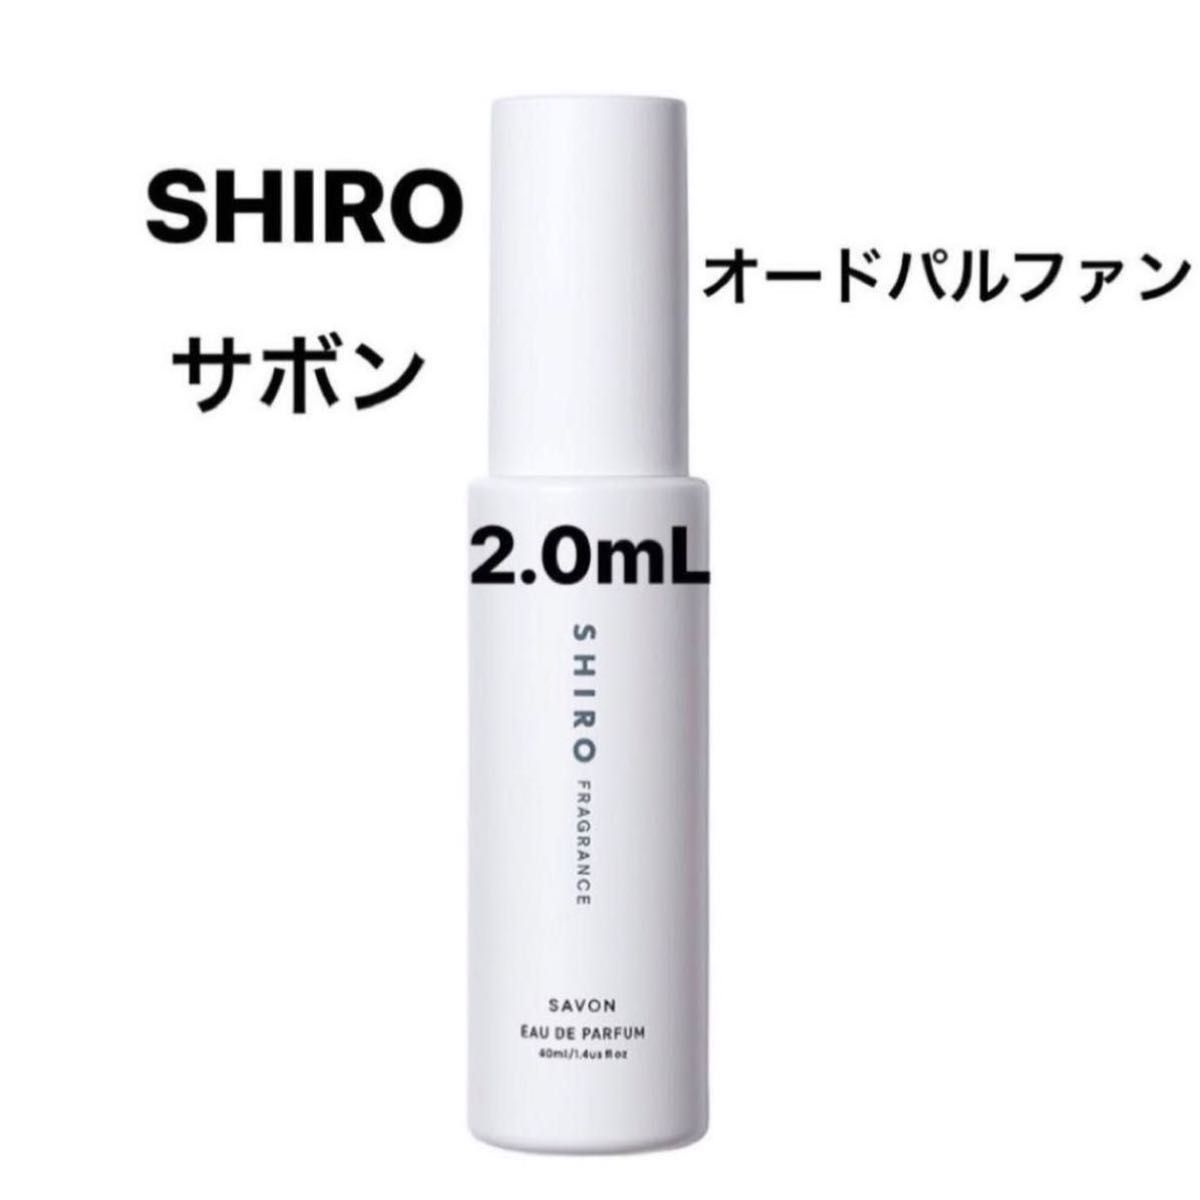 SHIRO シロ サボン オードパルファン アトマイザー 2.0mL